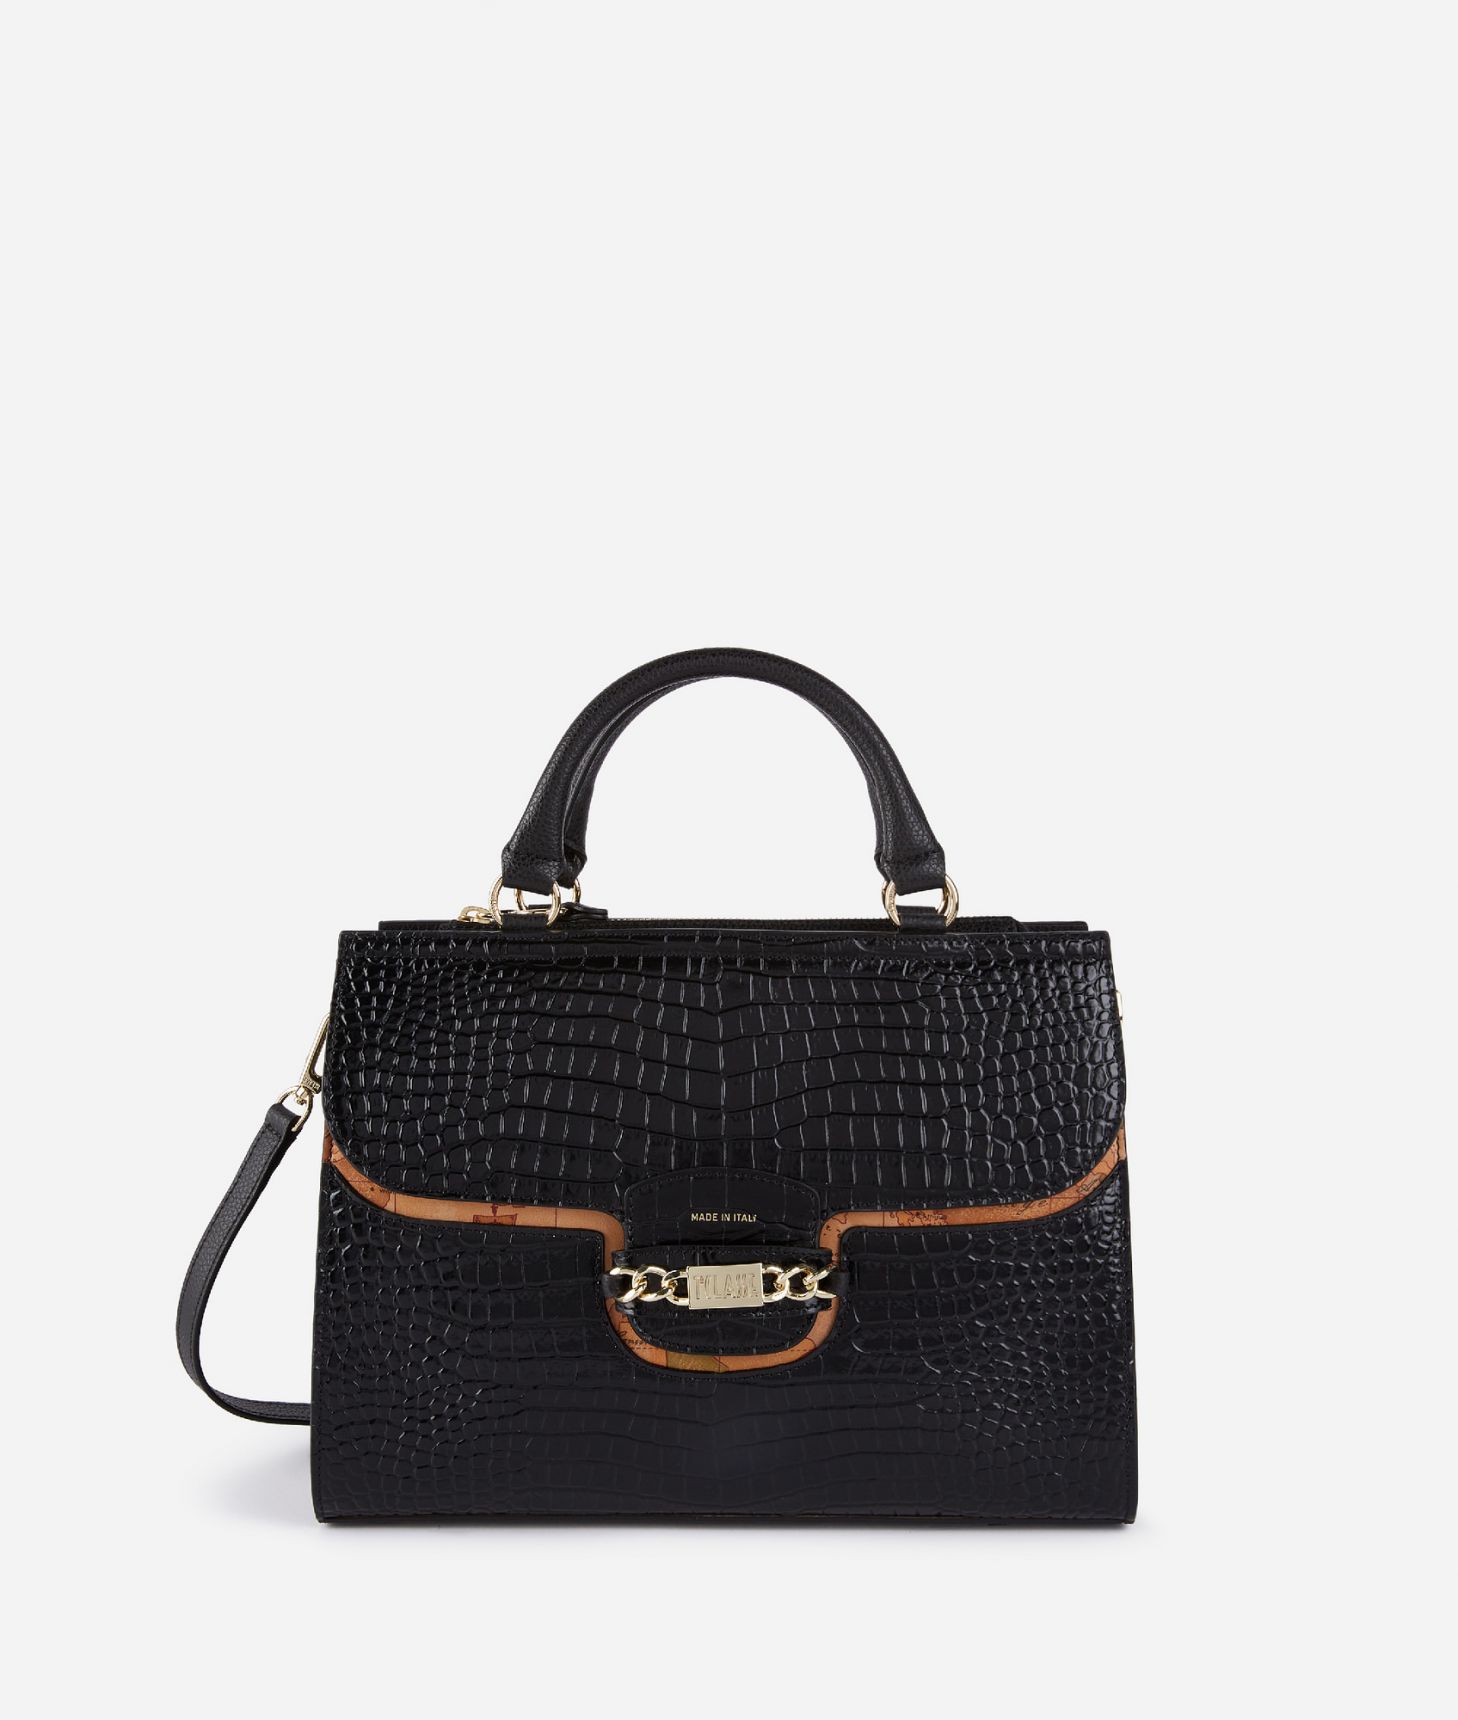 Millennium Bag handbag in mock-croc leather with shoulder strap Black,front